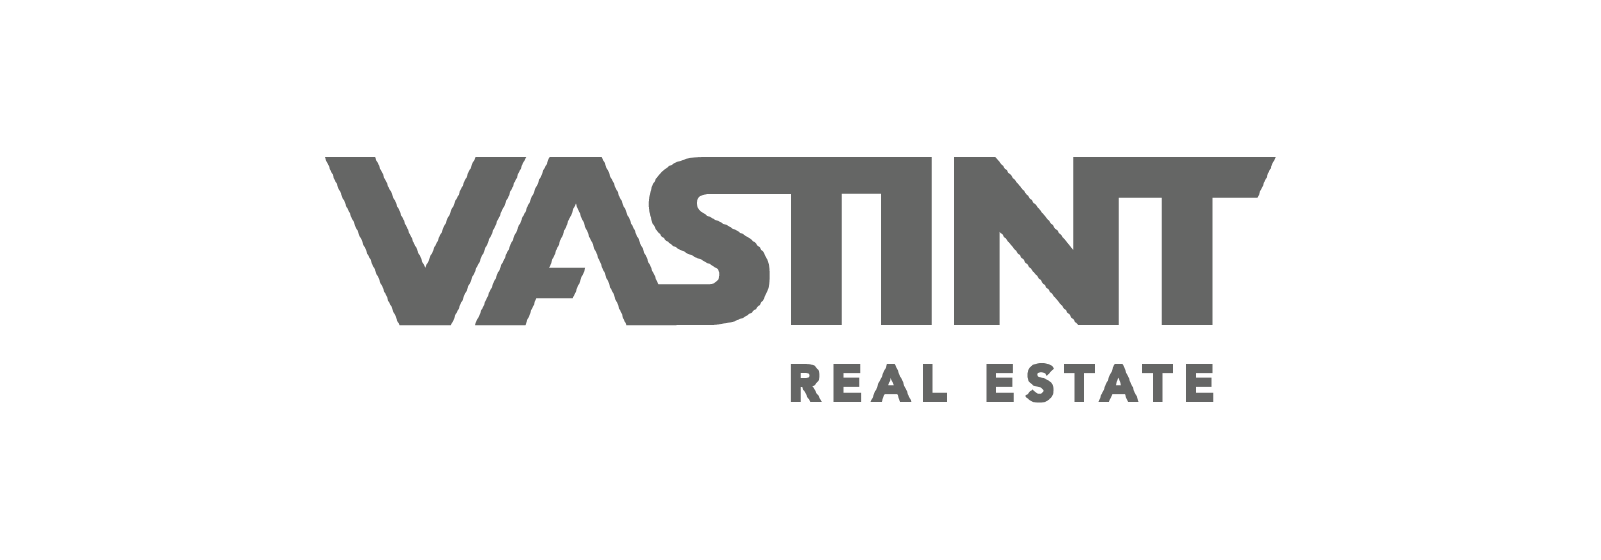 Vastint logo